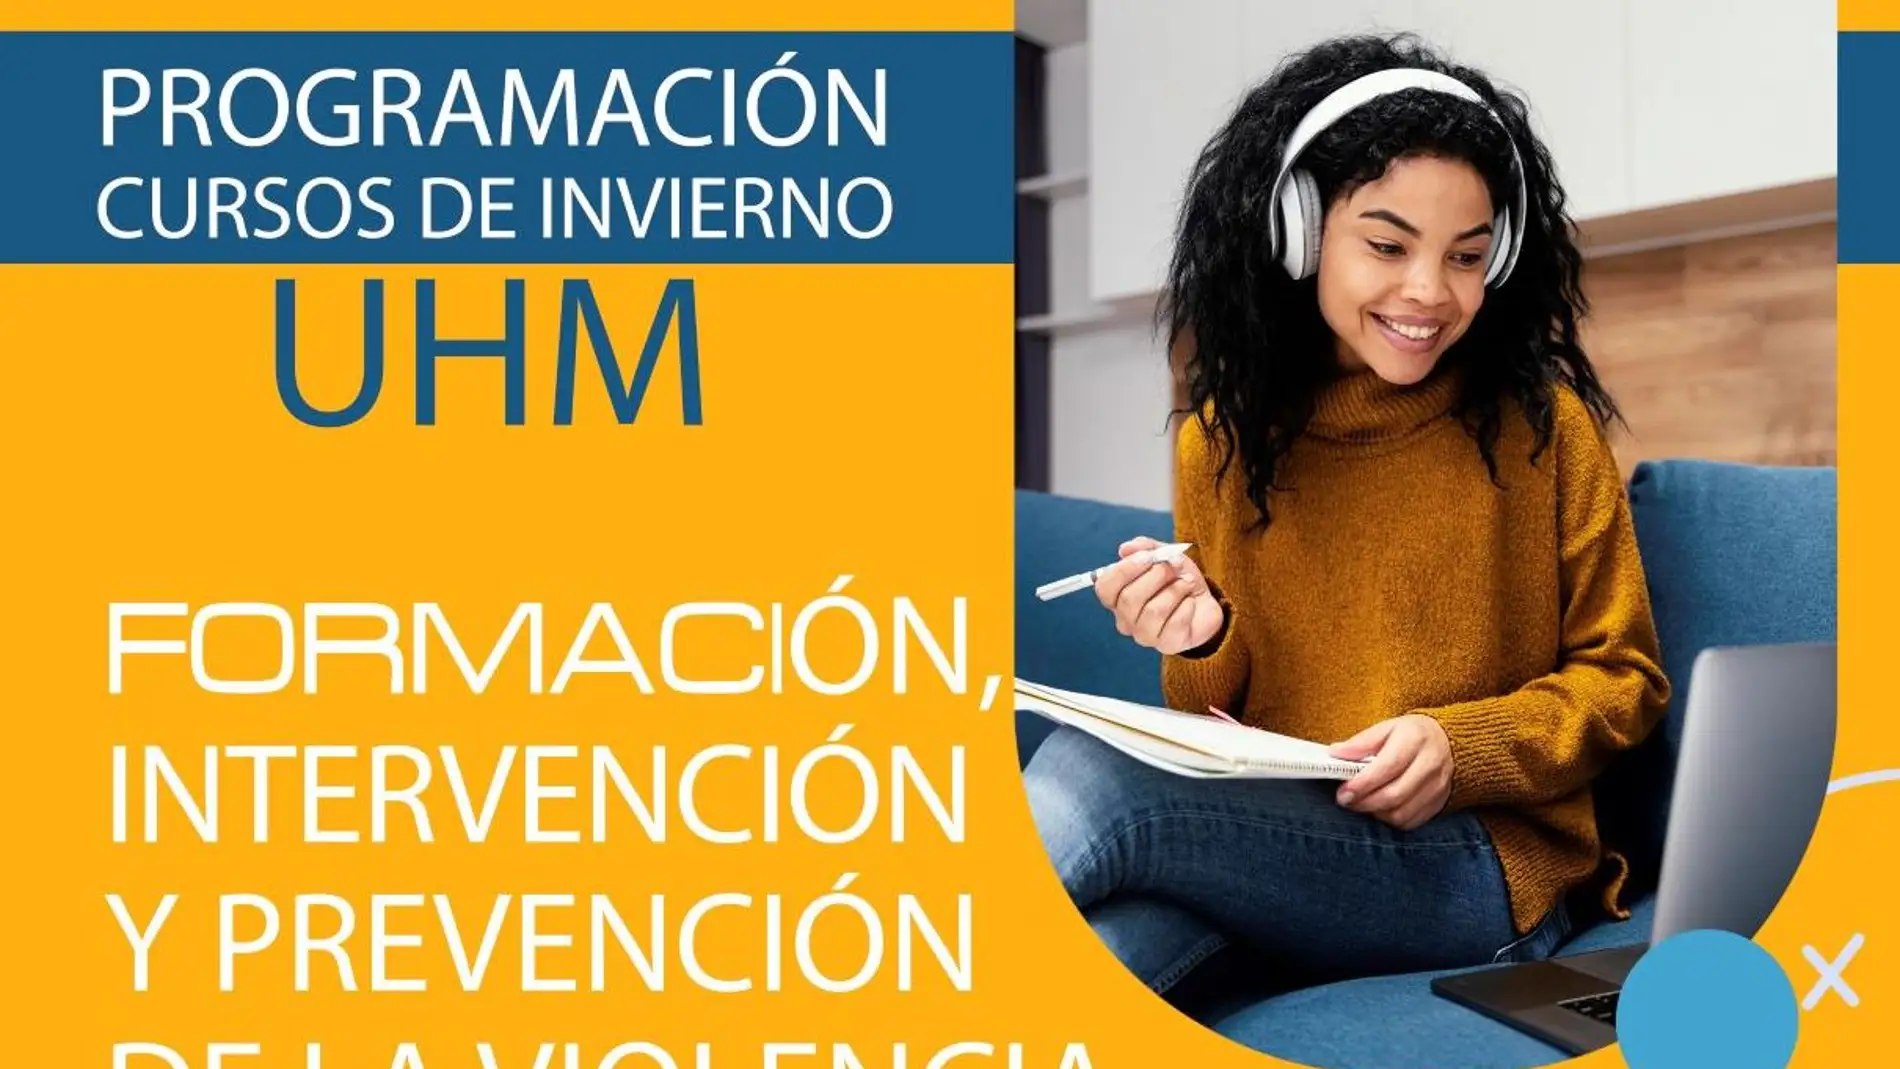 El curso será de 25 horas y se encuentra englobado en la Programación de Invierno de la Universidad Miguel Hernández 